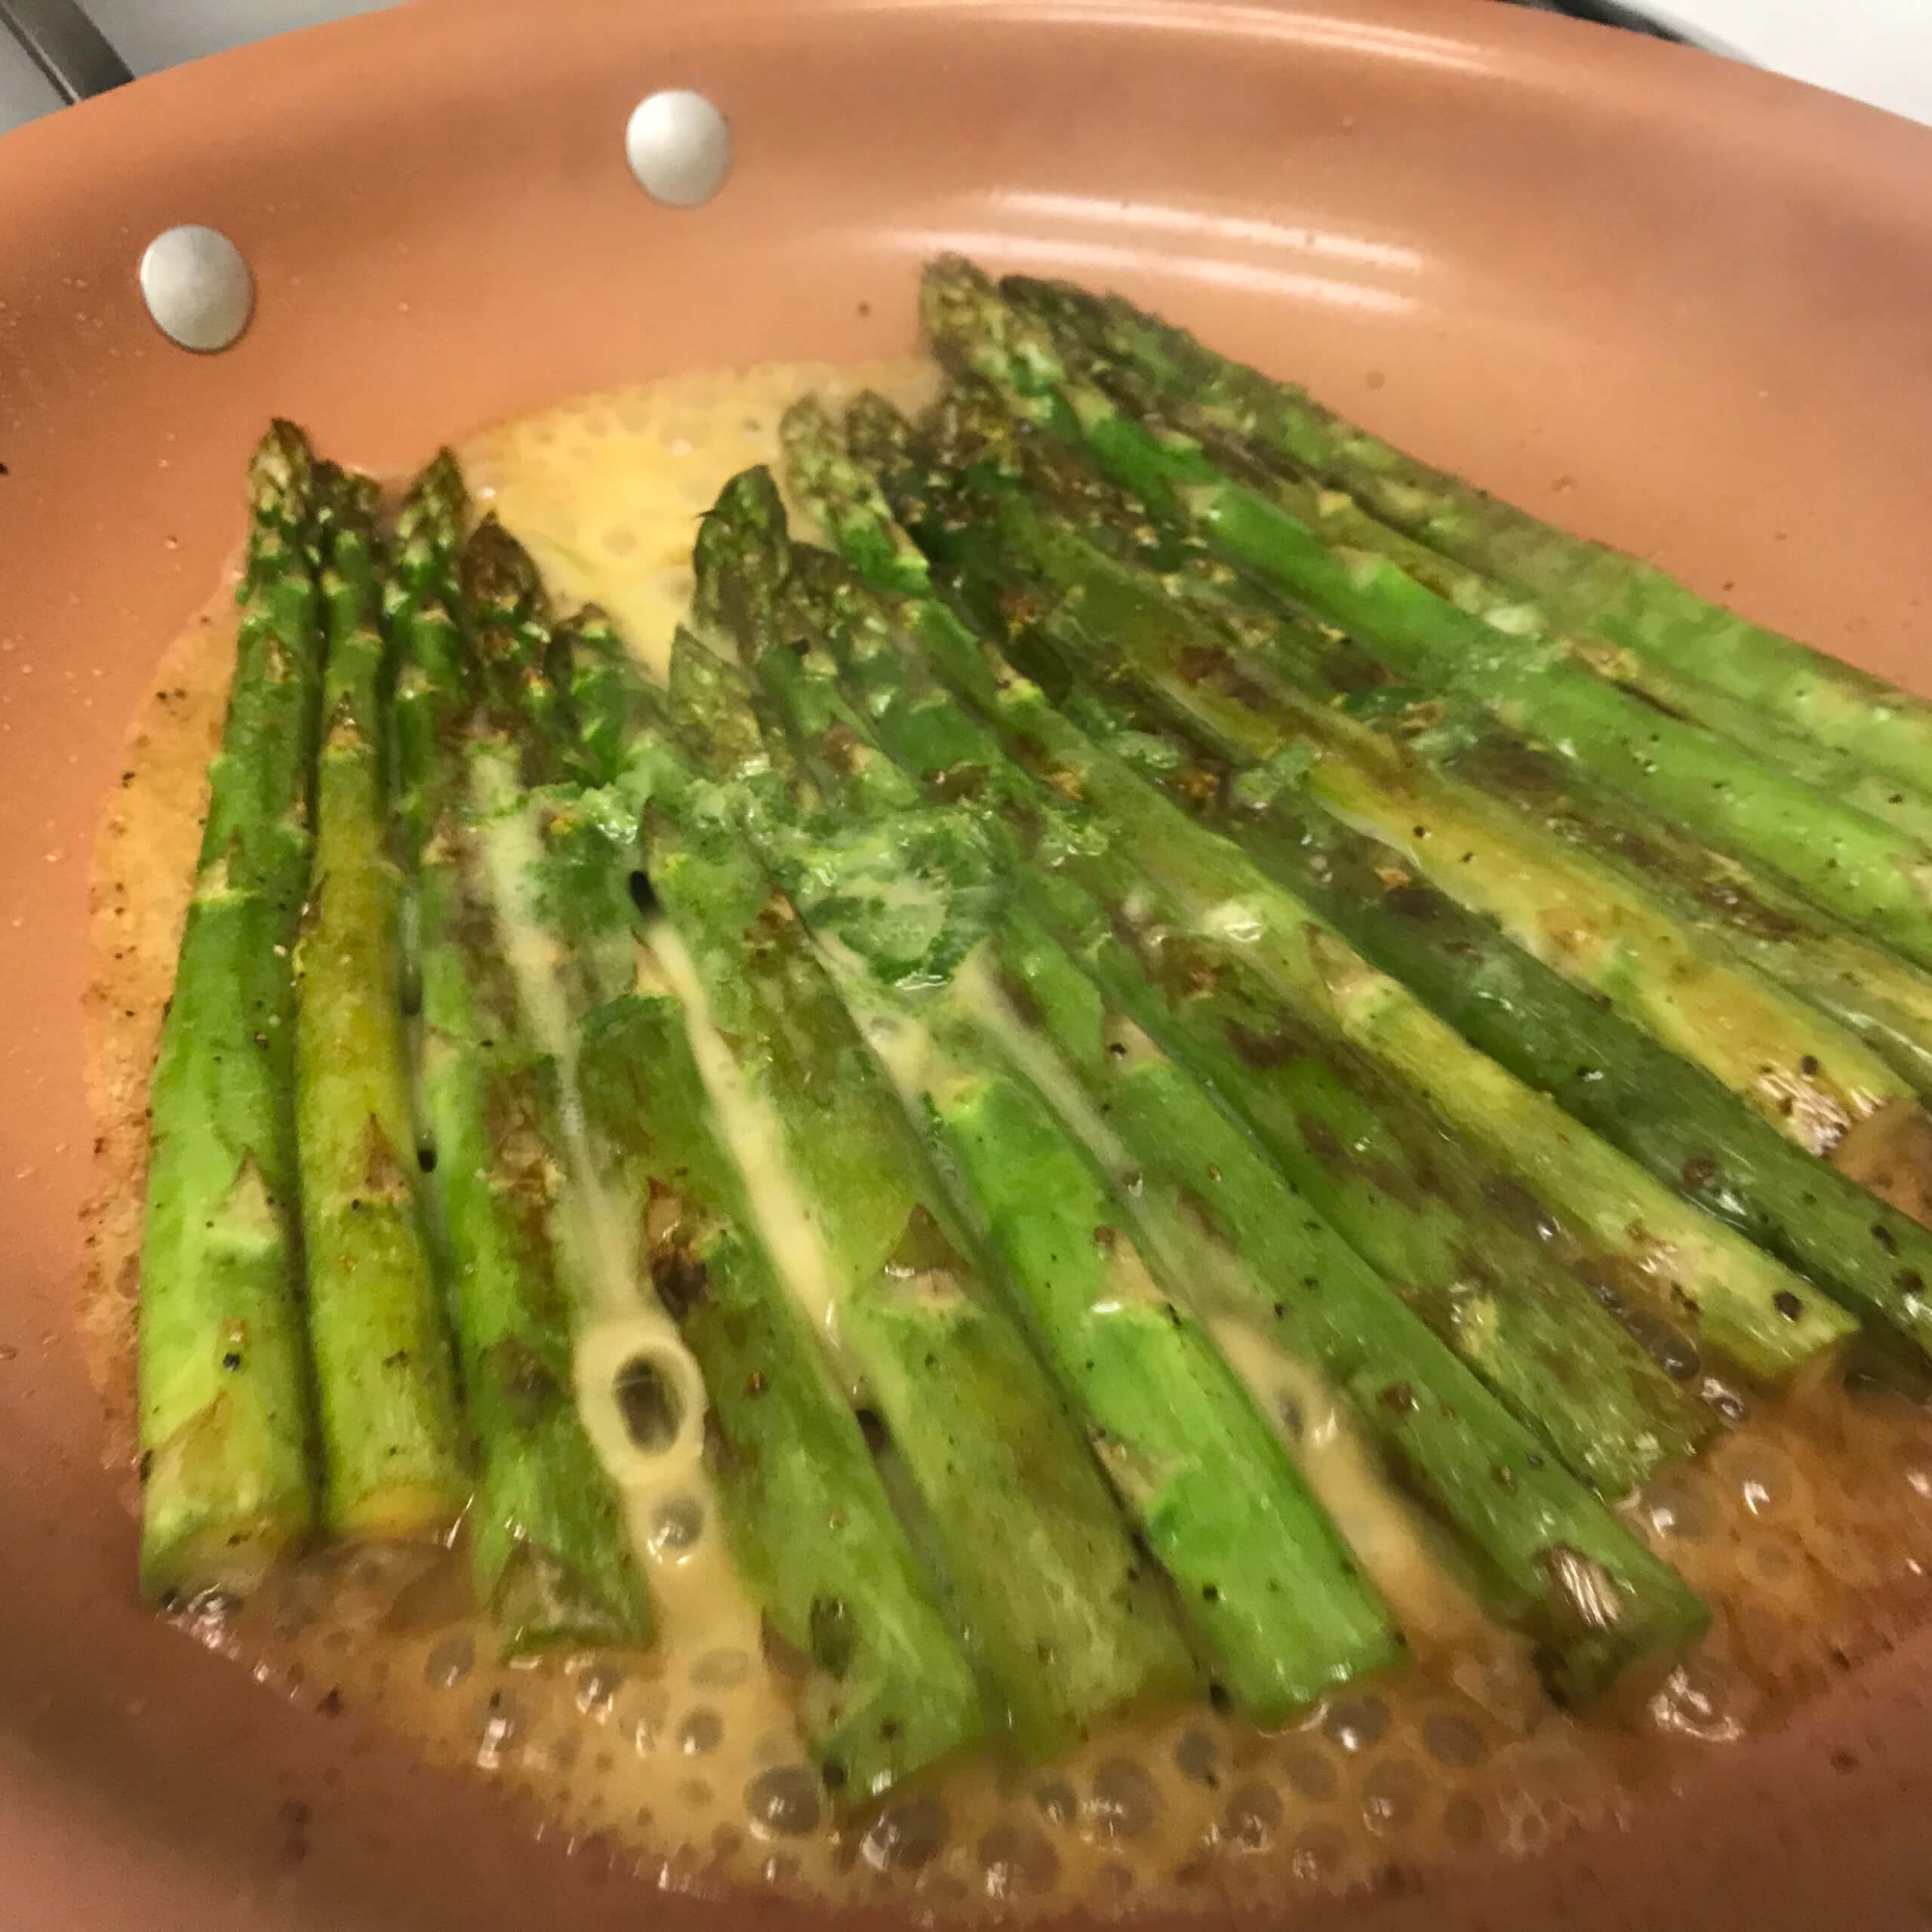 Garden asparagus